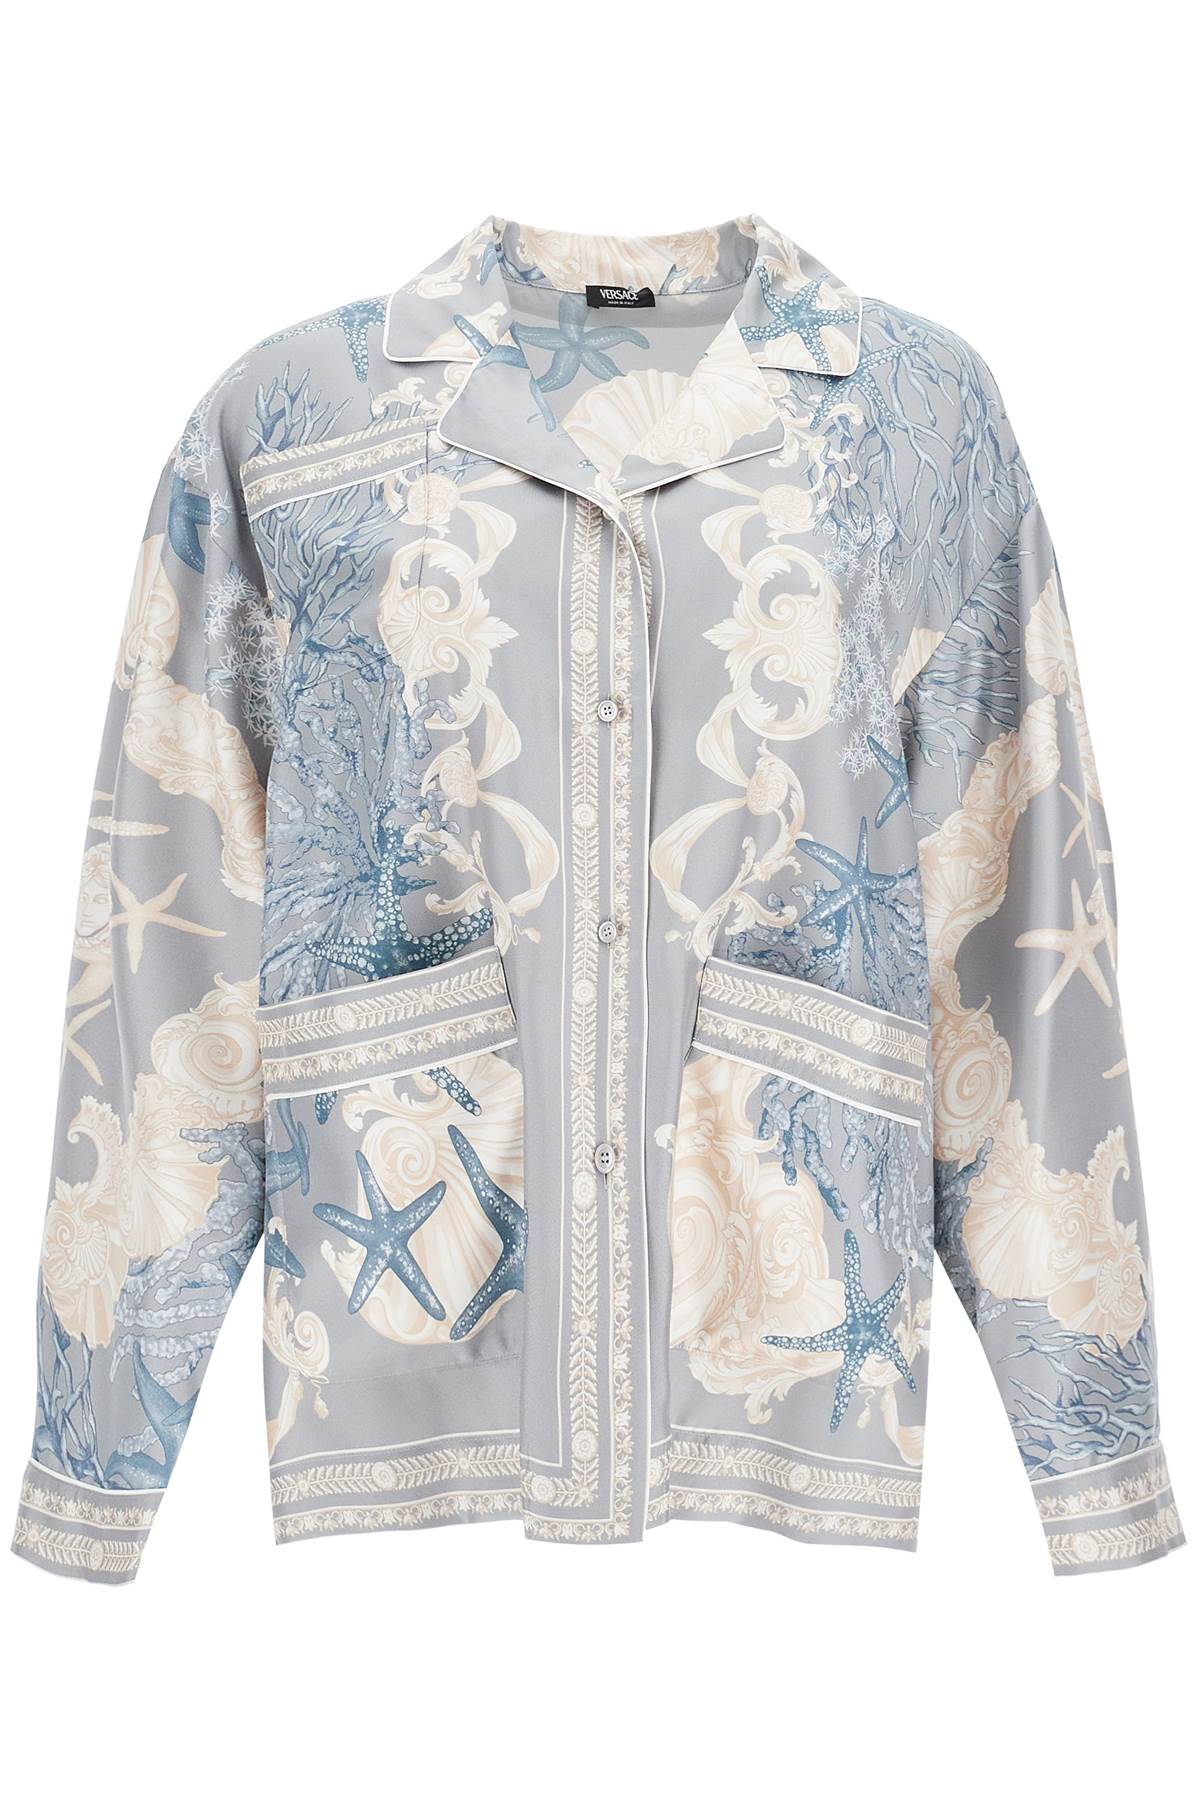 Versace VERSACE silk baroque shirt